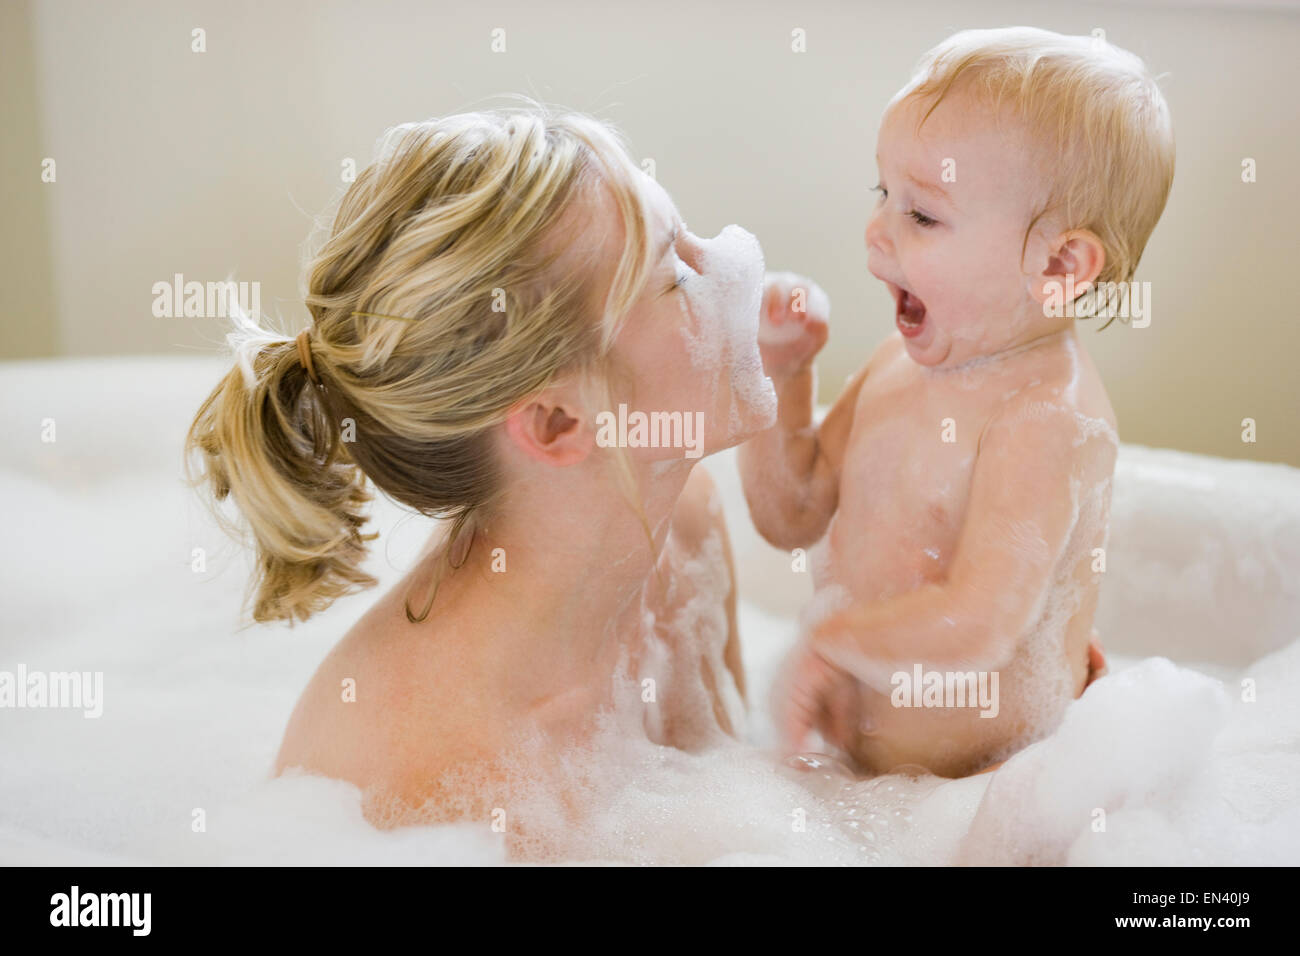 Natural Bubble Bath for Children, Vegan Bubble Bath